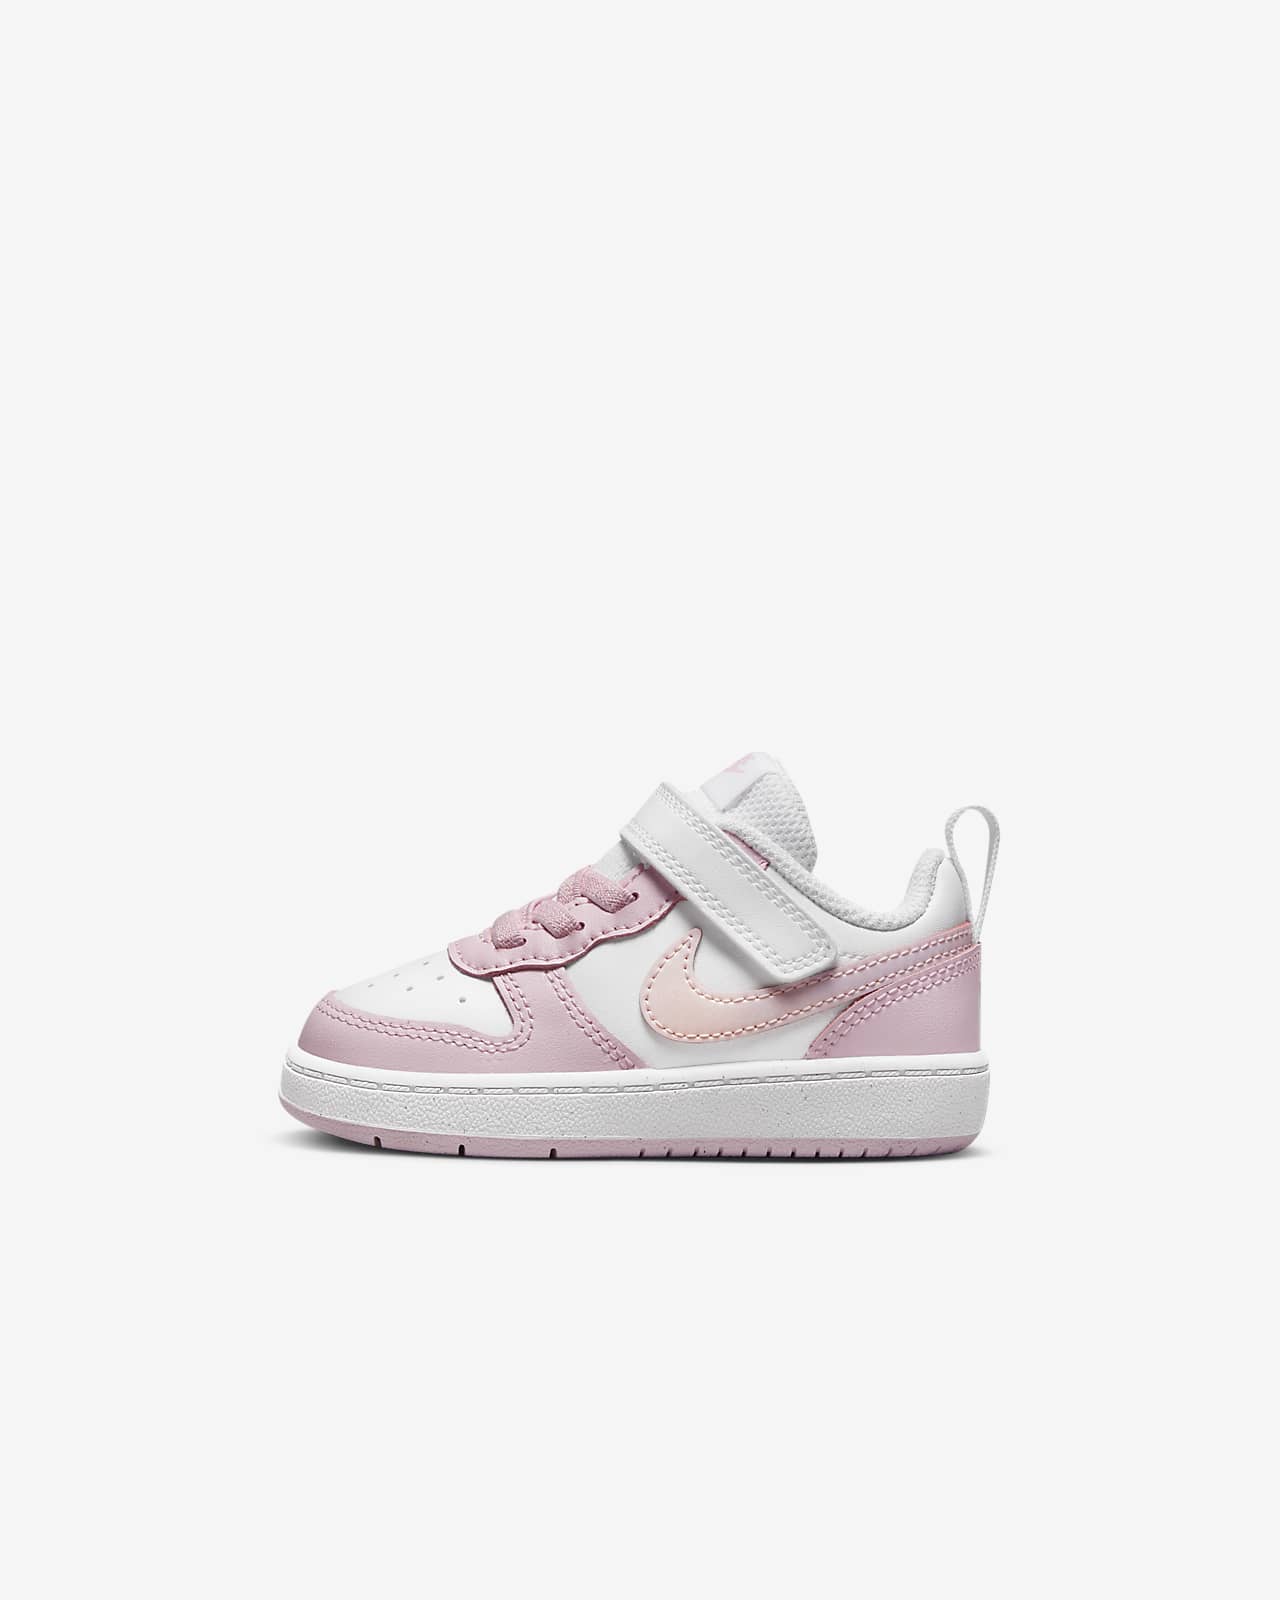 Nike Court Borough Low 2 SE Schuh für Babys und Kleinkinder